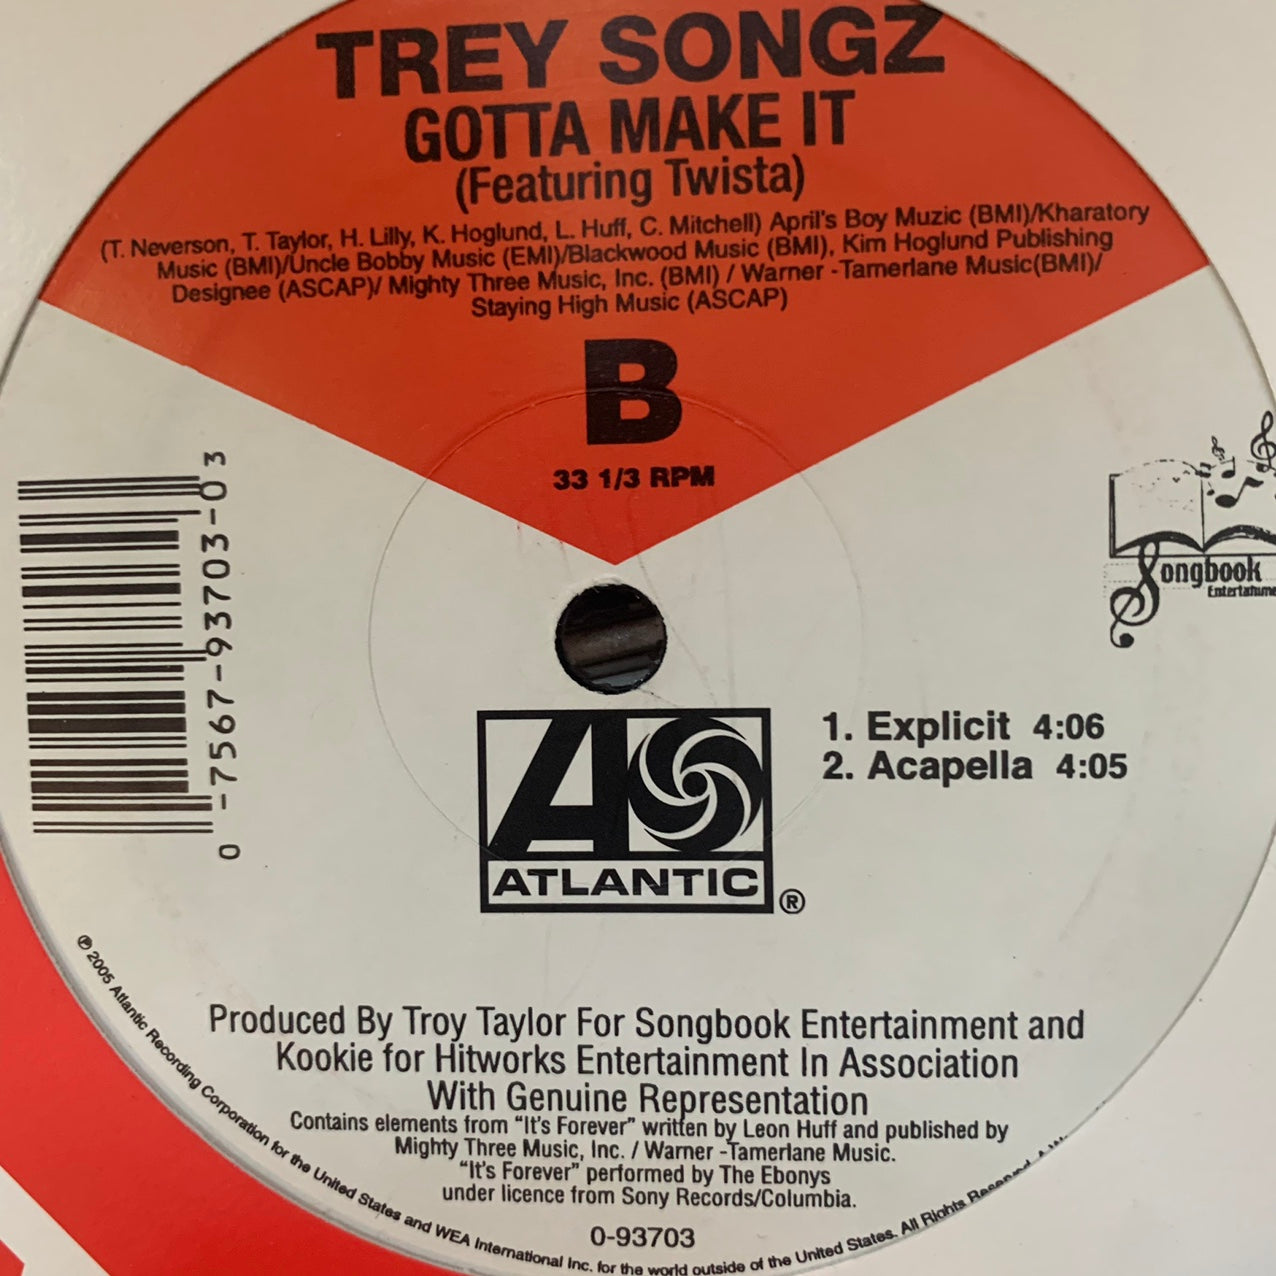 Trey Songz Feat Twista “Gotta Make It” 4 Version 12inch Vinyl